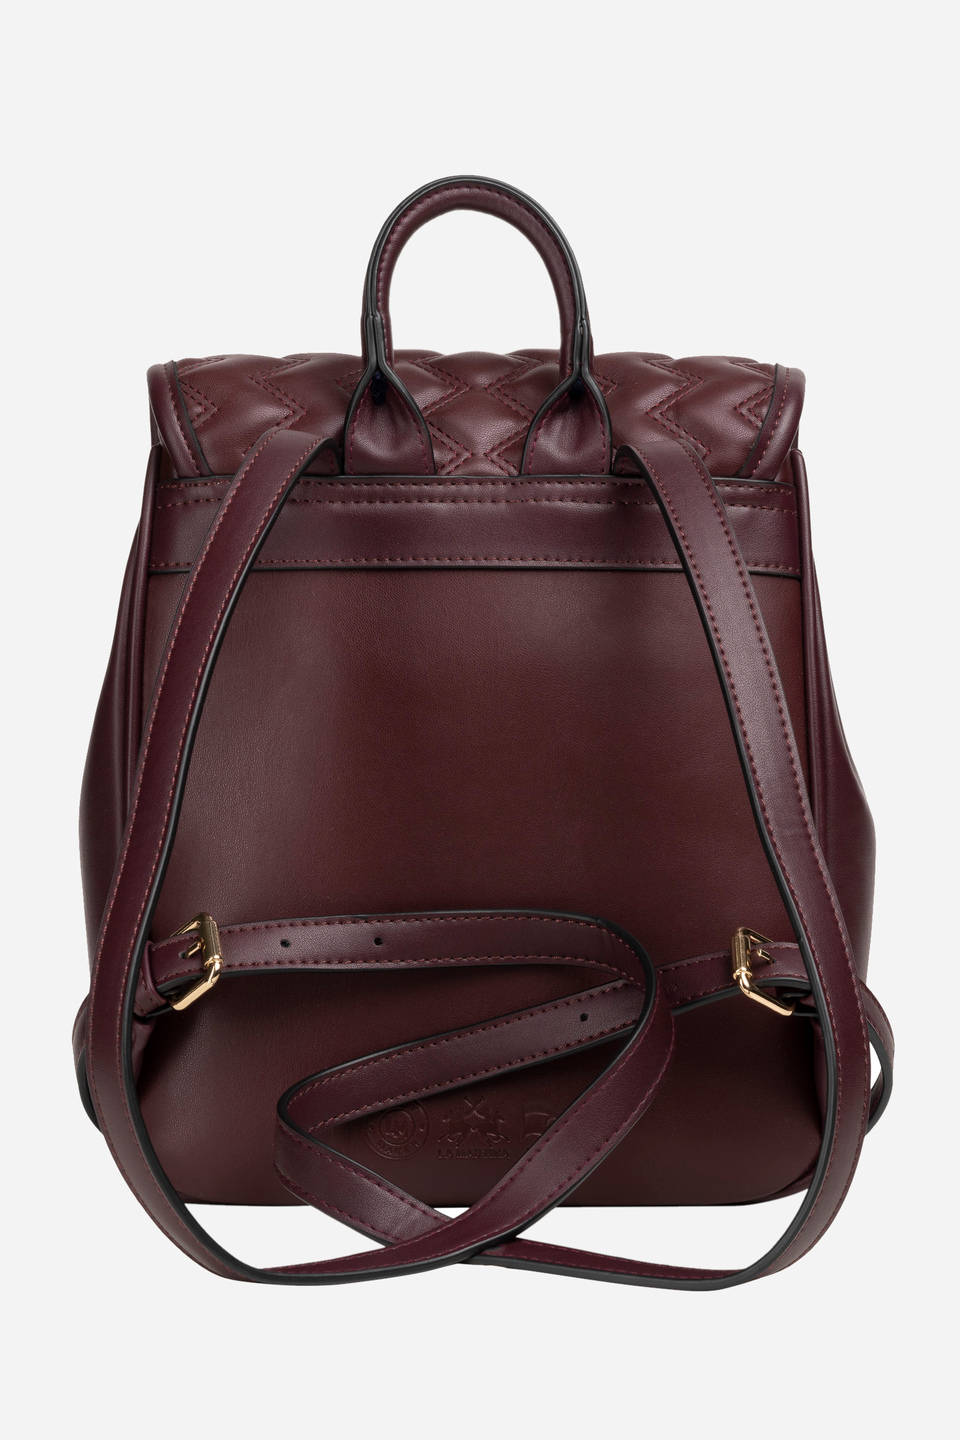 Backpack solid color burgundy fabric pu - Isabel | La Martina - Official Online Shop